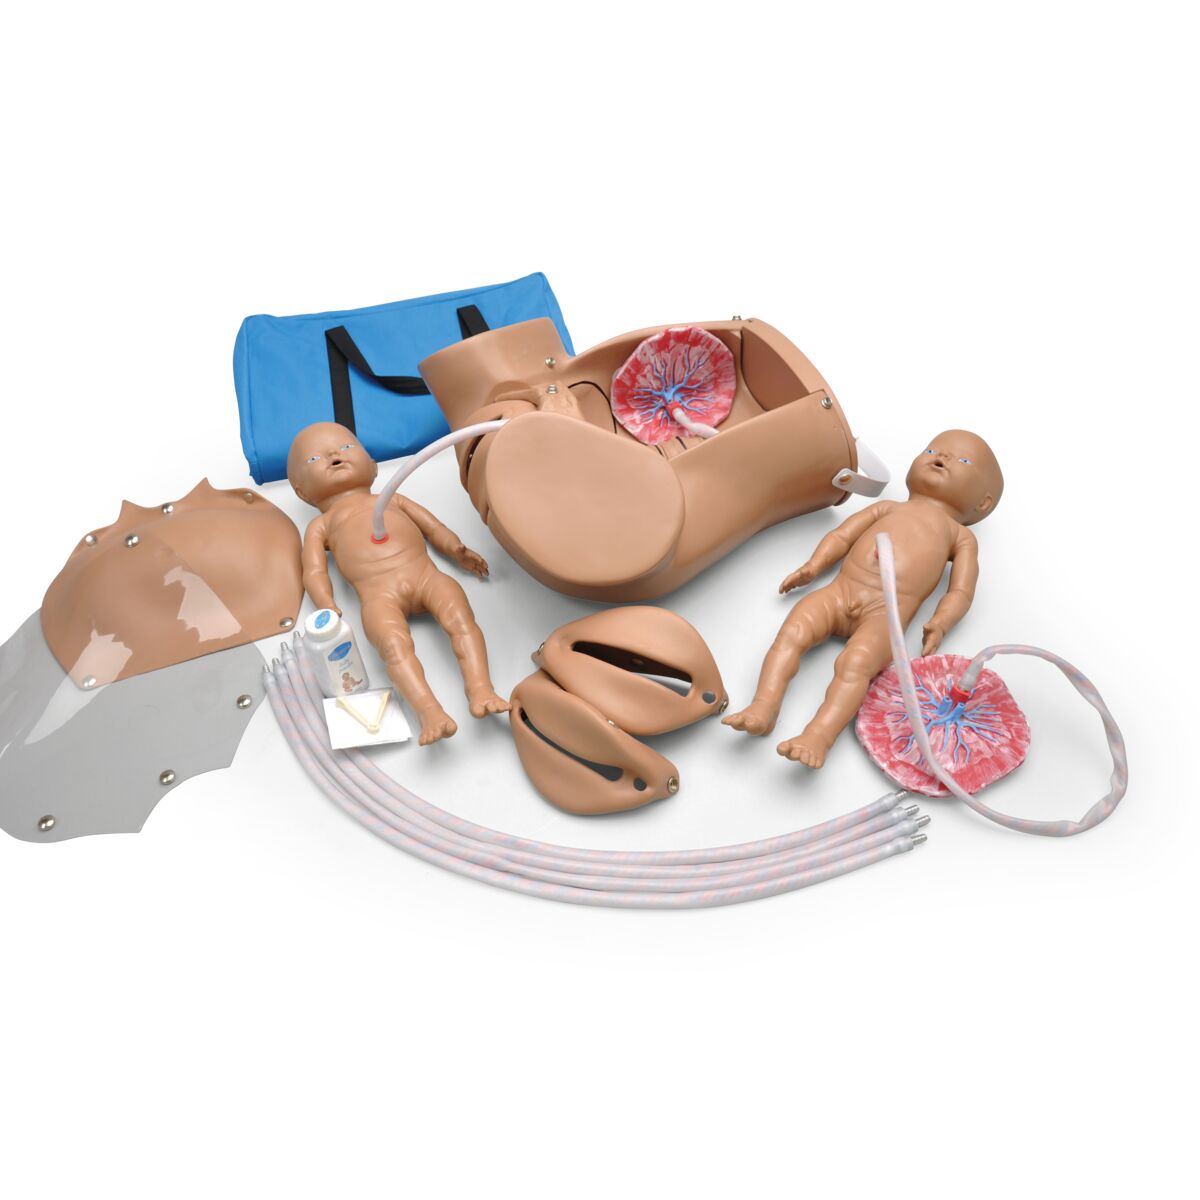 Pregnancy Profile 2.0 Obstetric Simulator